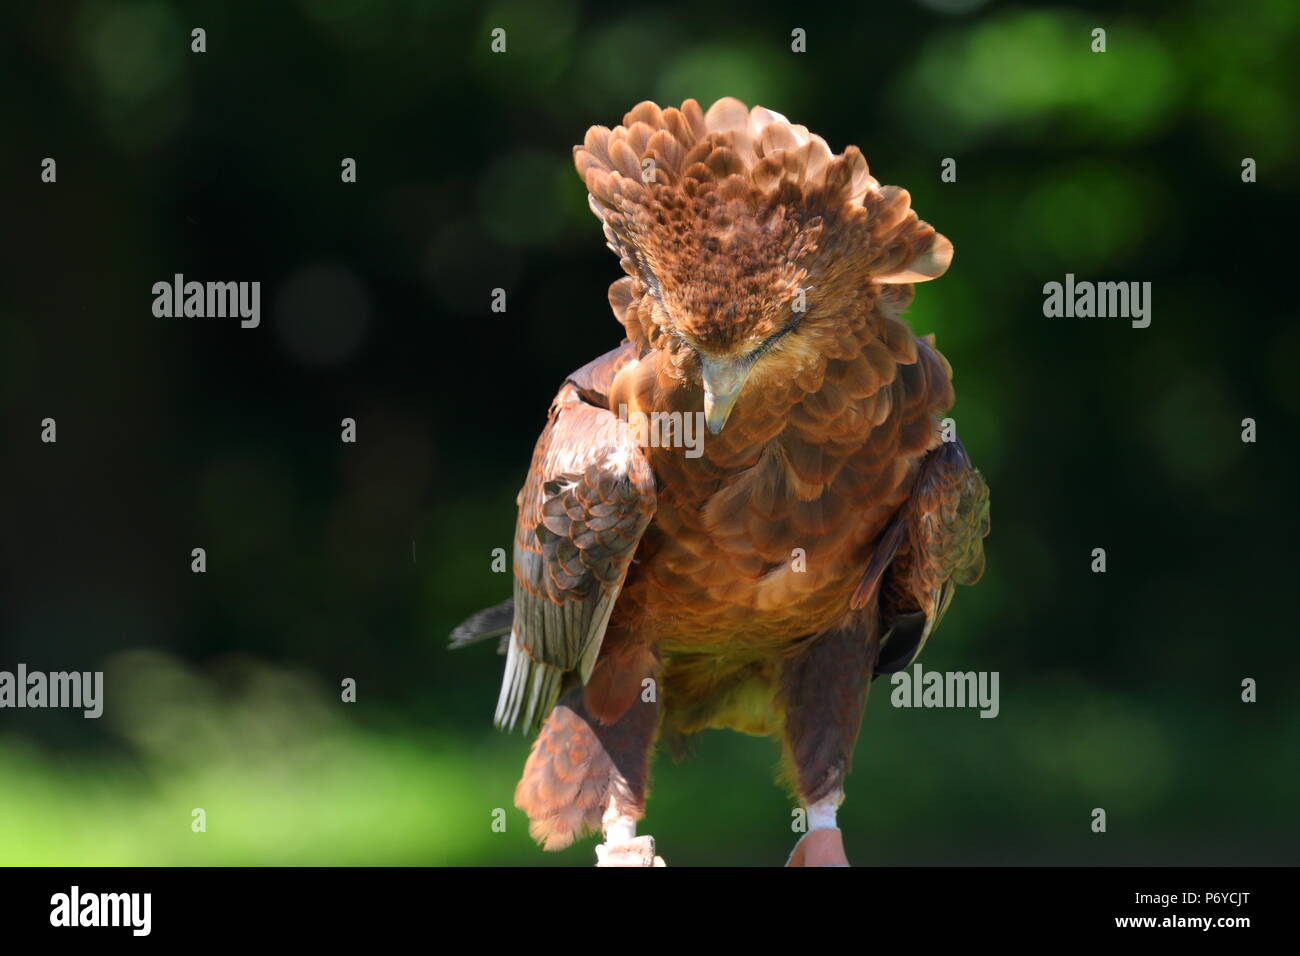 Ein Bachelor Adler im Paradise Park in Hayle, Cornwall auf Anzeige bei einer Ihrer Adler zeigt. Stockfoto